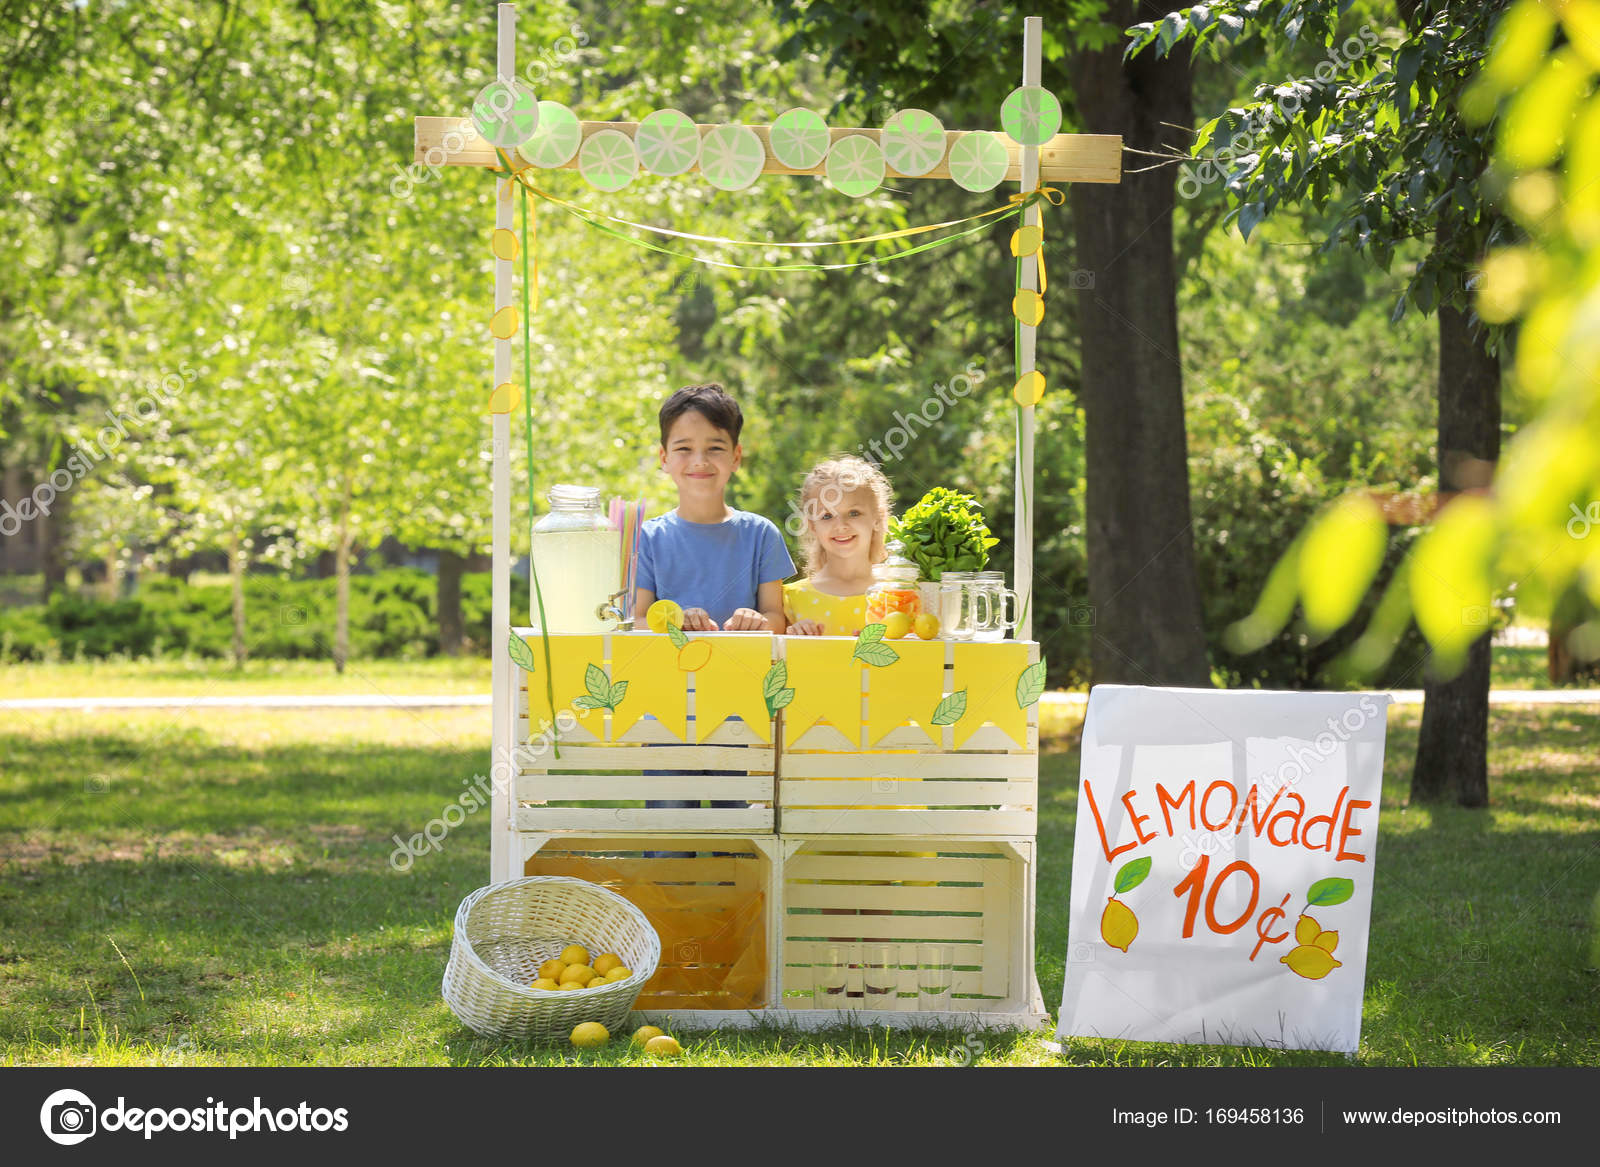 depositphotos_169458136-stock-photo-adorable-children-selling-homemade-lemonade.jpg